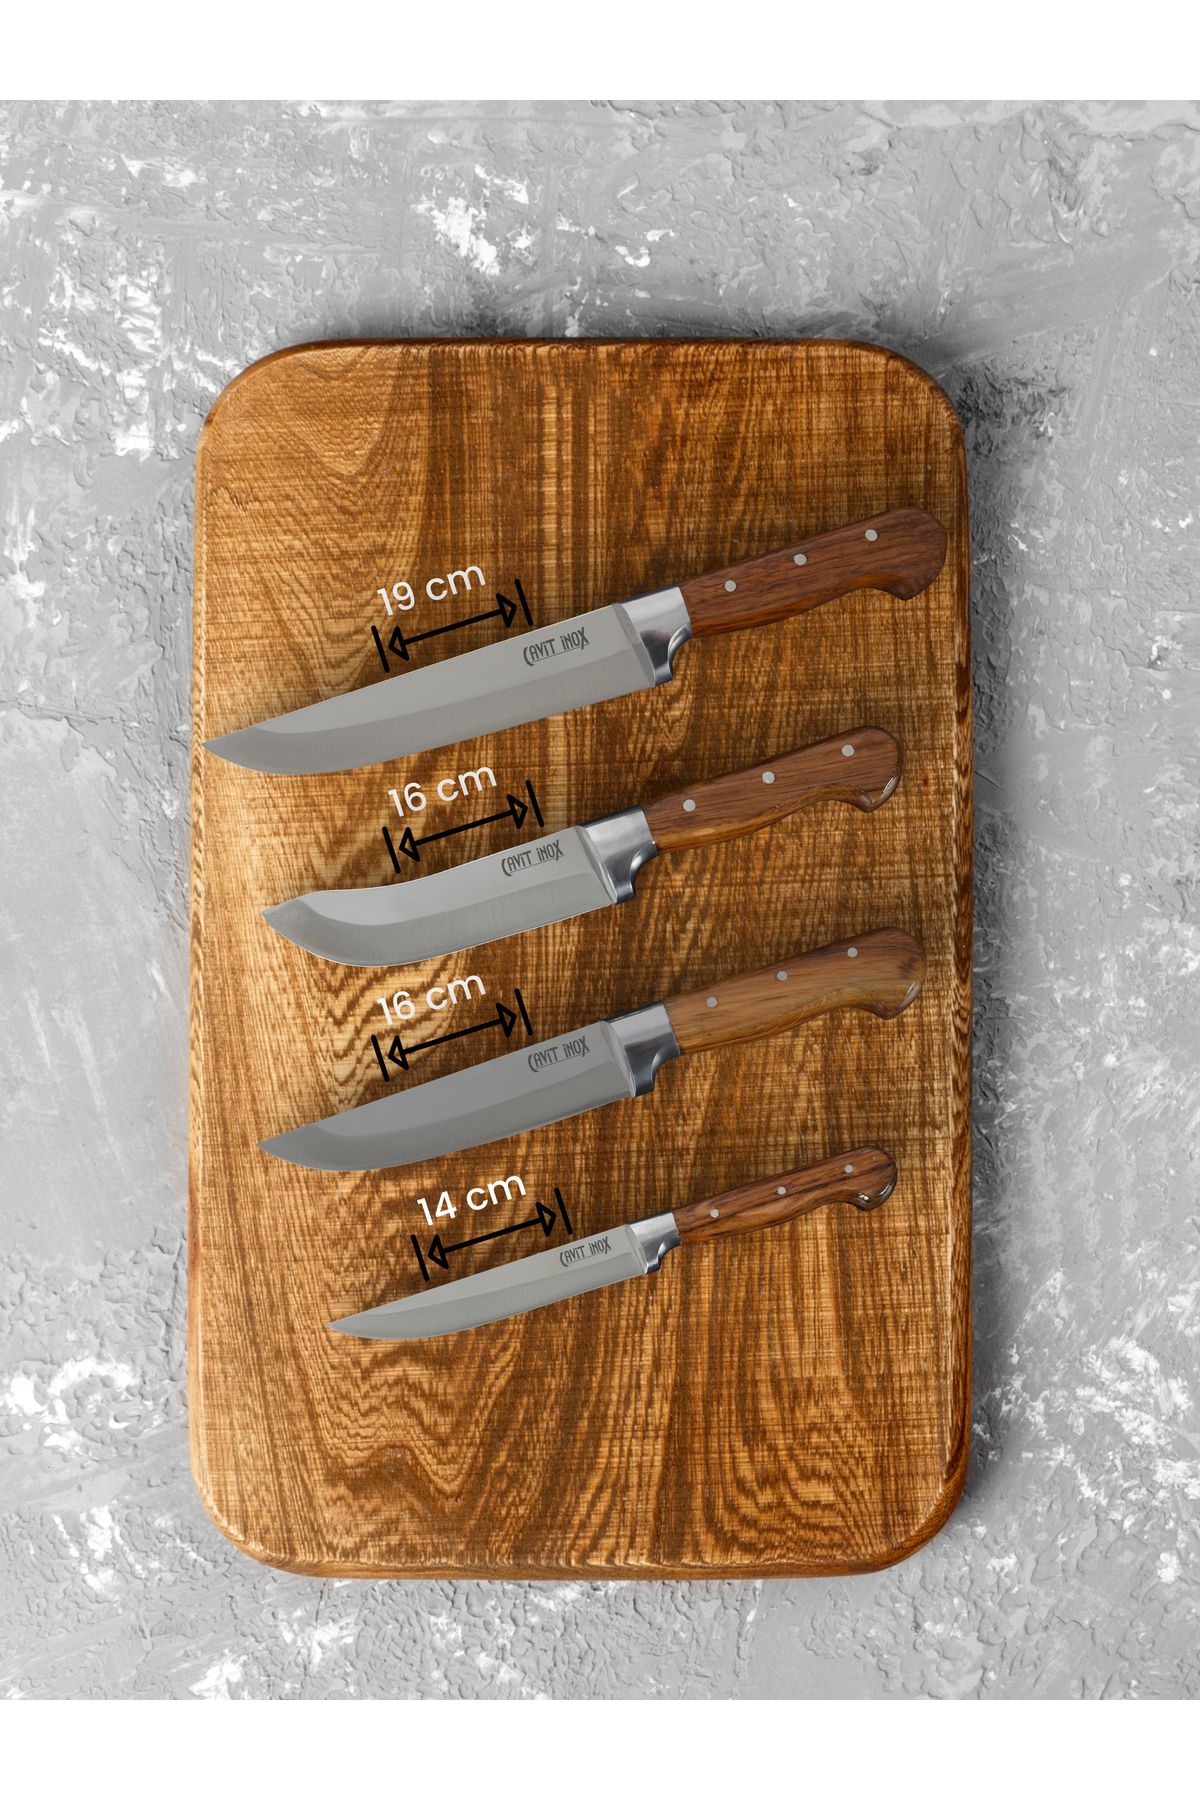 Cavit İnox Mutfak Bıçak Et Sebze Ekmek Meyve Bıçak Seti 4 Parça